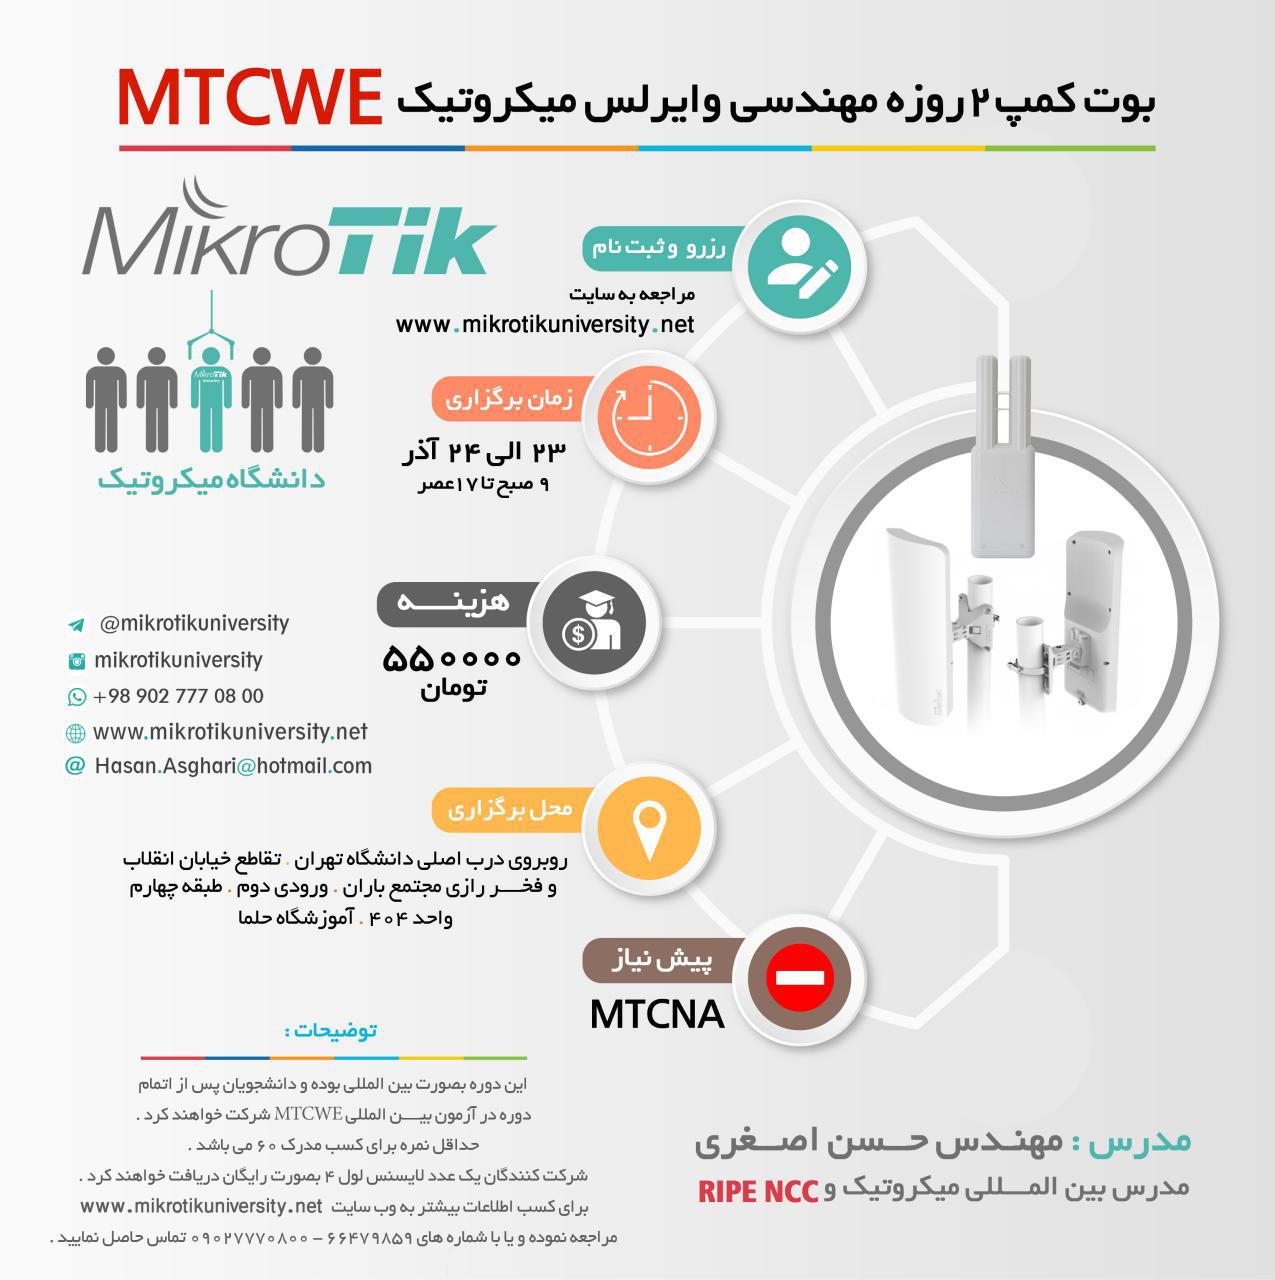 Mikrotikuniversity-MTCWE-Tehran-001